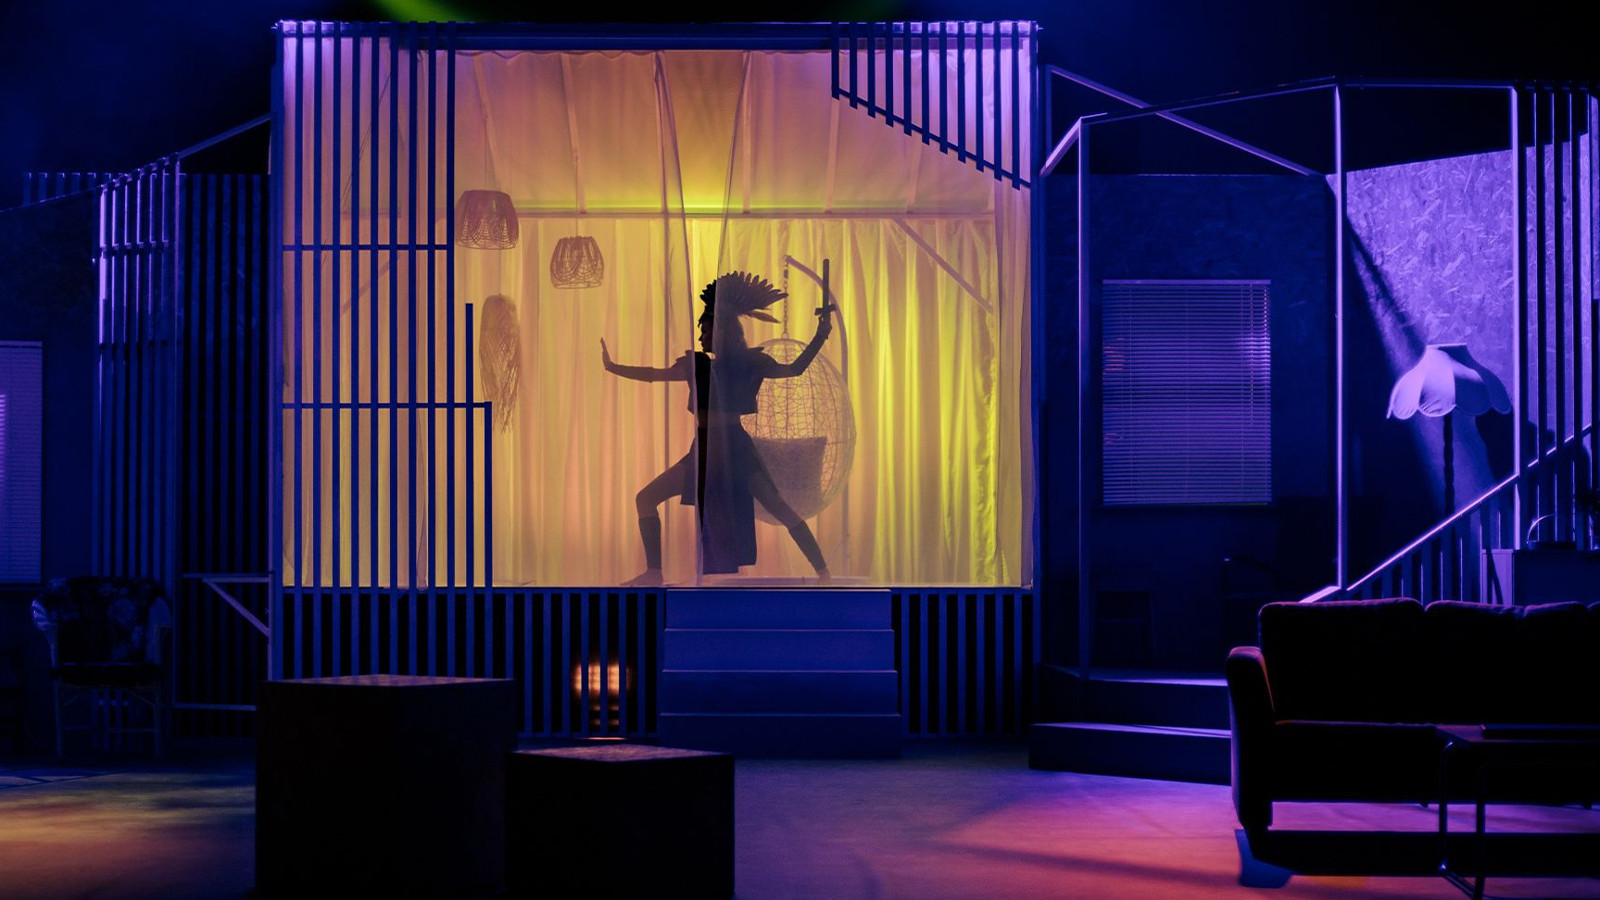 Kuvassa on sinertävää valoa olohuoneessa ja taustalla näkyy heijastettu soturihahmo tanssiasennossa.